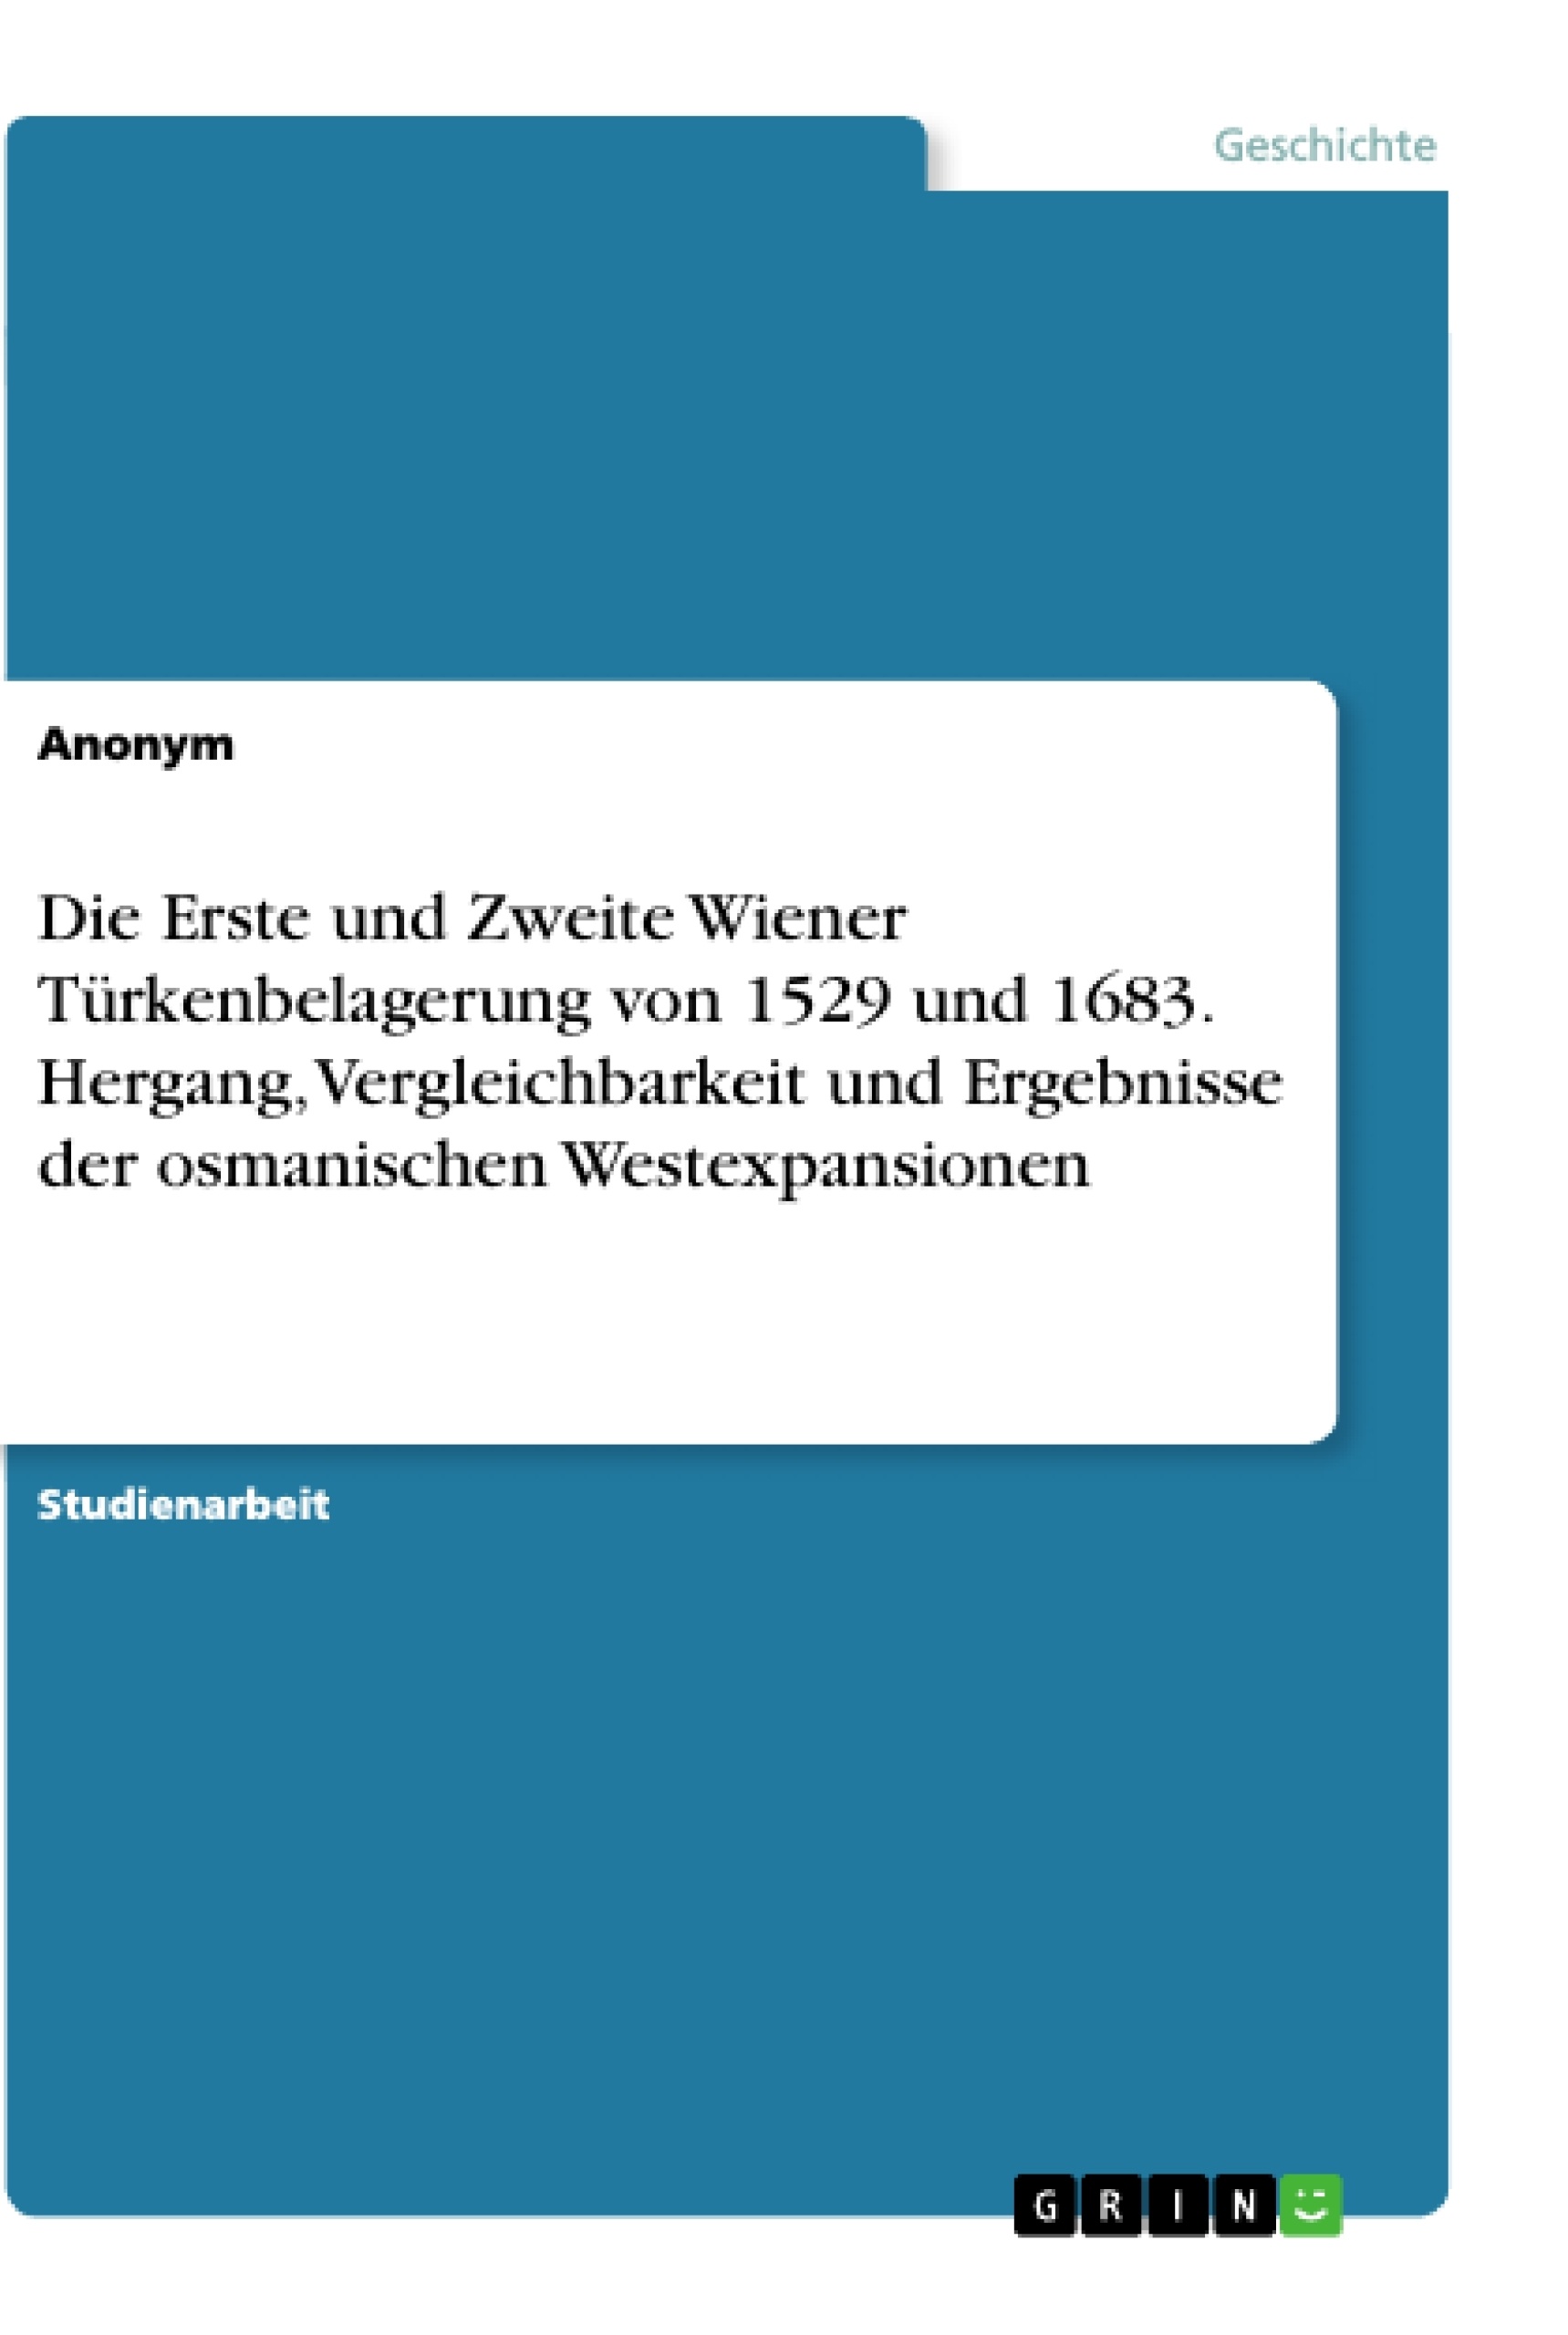 Title: Die Erste und Zweite Wiener Türkenbelagerung von 1529 und 1683. Hergang, Vergleichbarkeit und Ergebnisse der osmanischen Westexpansionen